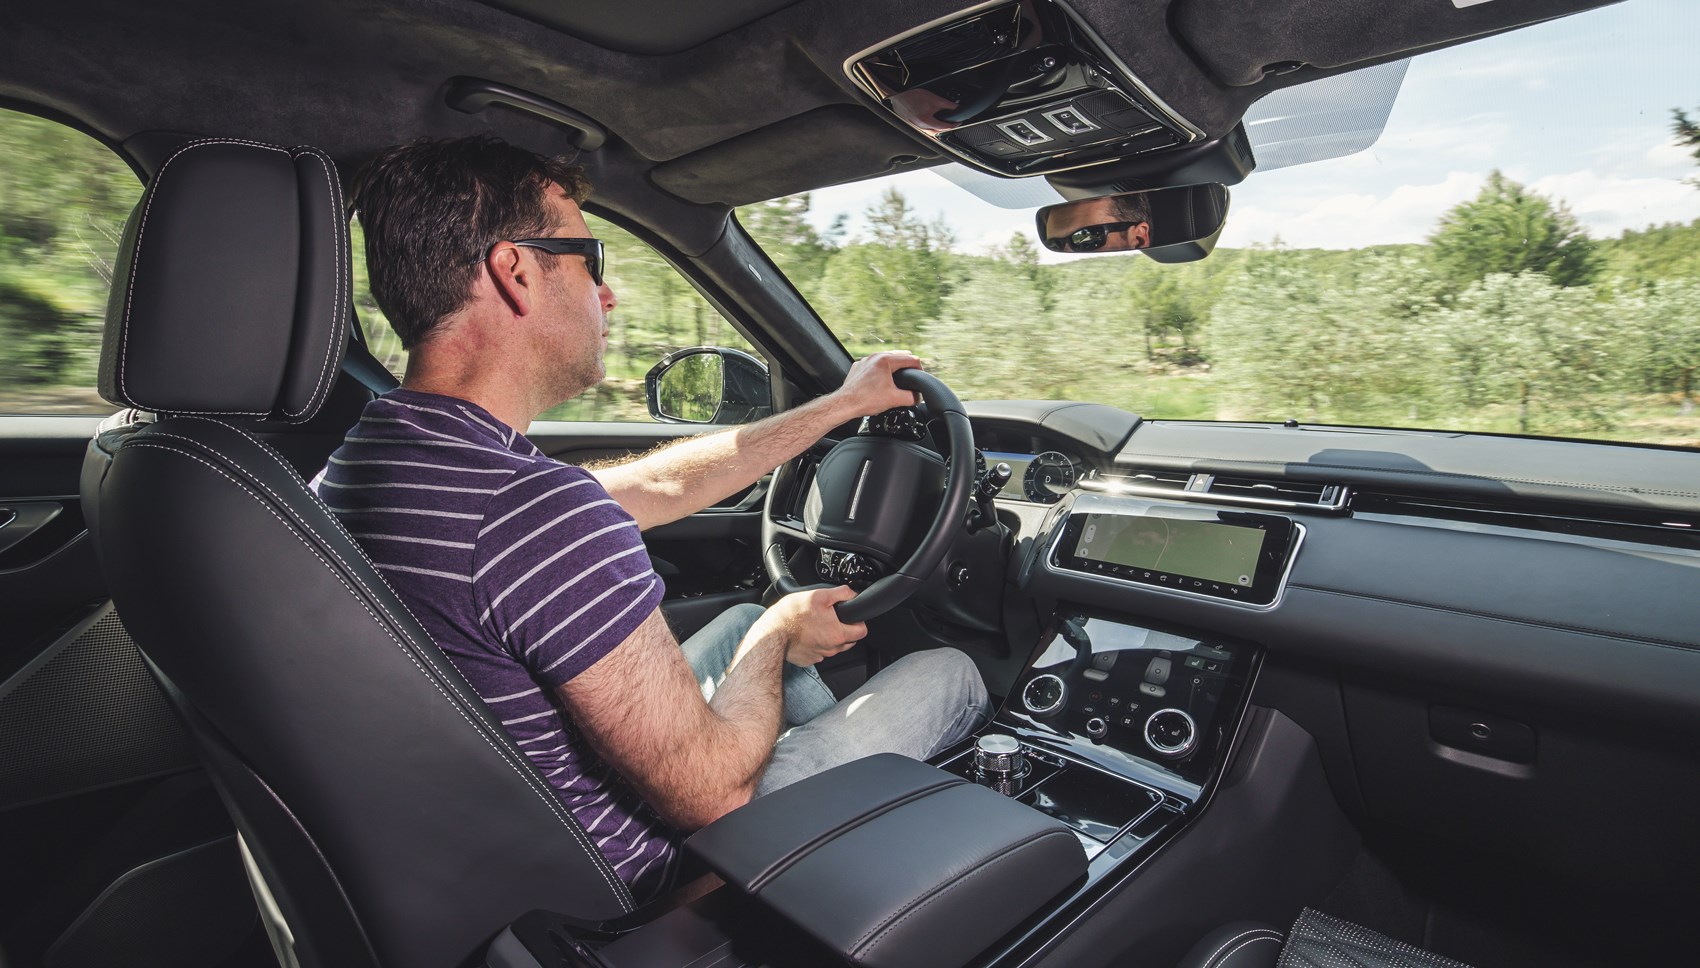 Range Rover Velar Svautobiography Dynamic 2019 Review V8